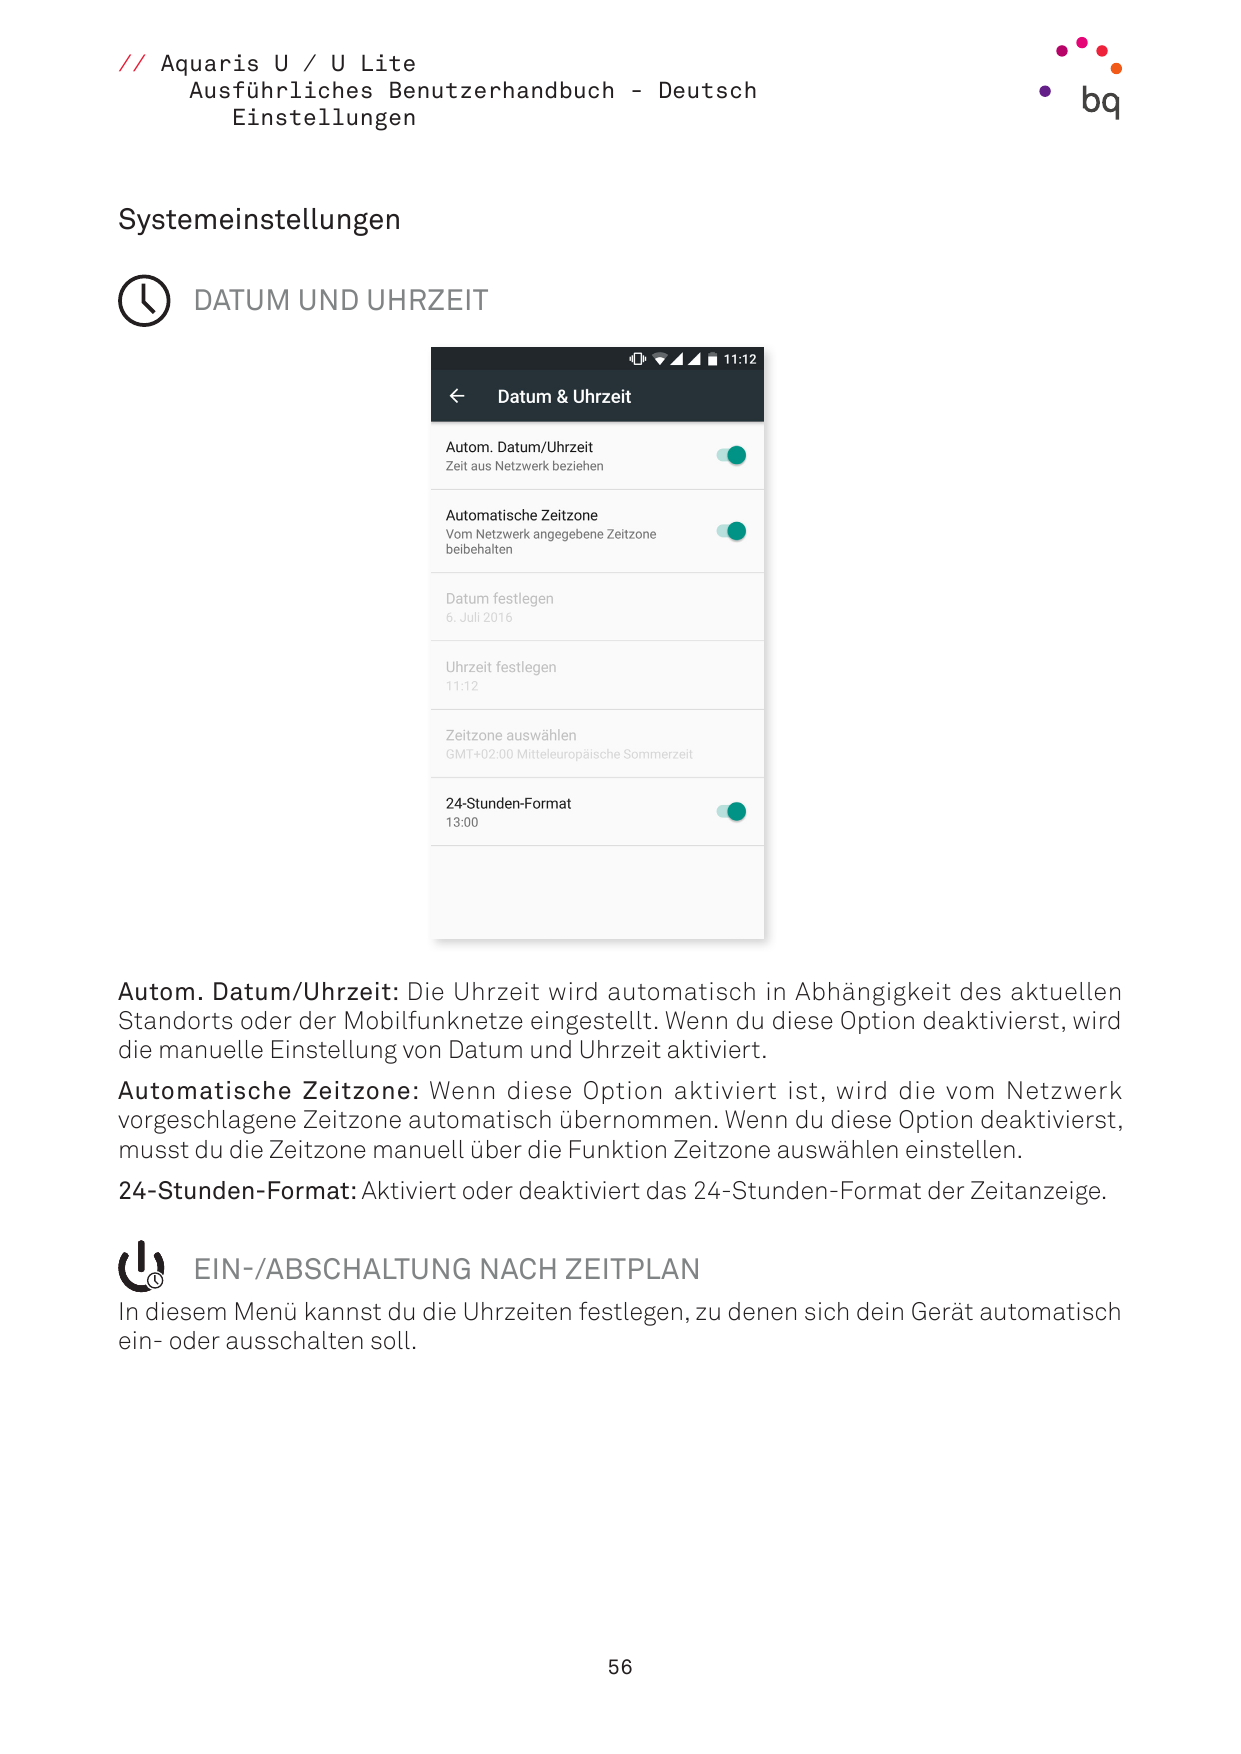 // Aquaris U / U LiteAusführliches Benutzerhandbuch - DeutschEinstellungenSystemeinstellungen DATUM UND UHRZEITAutom. Datum/Uhrz